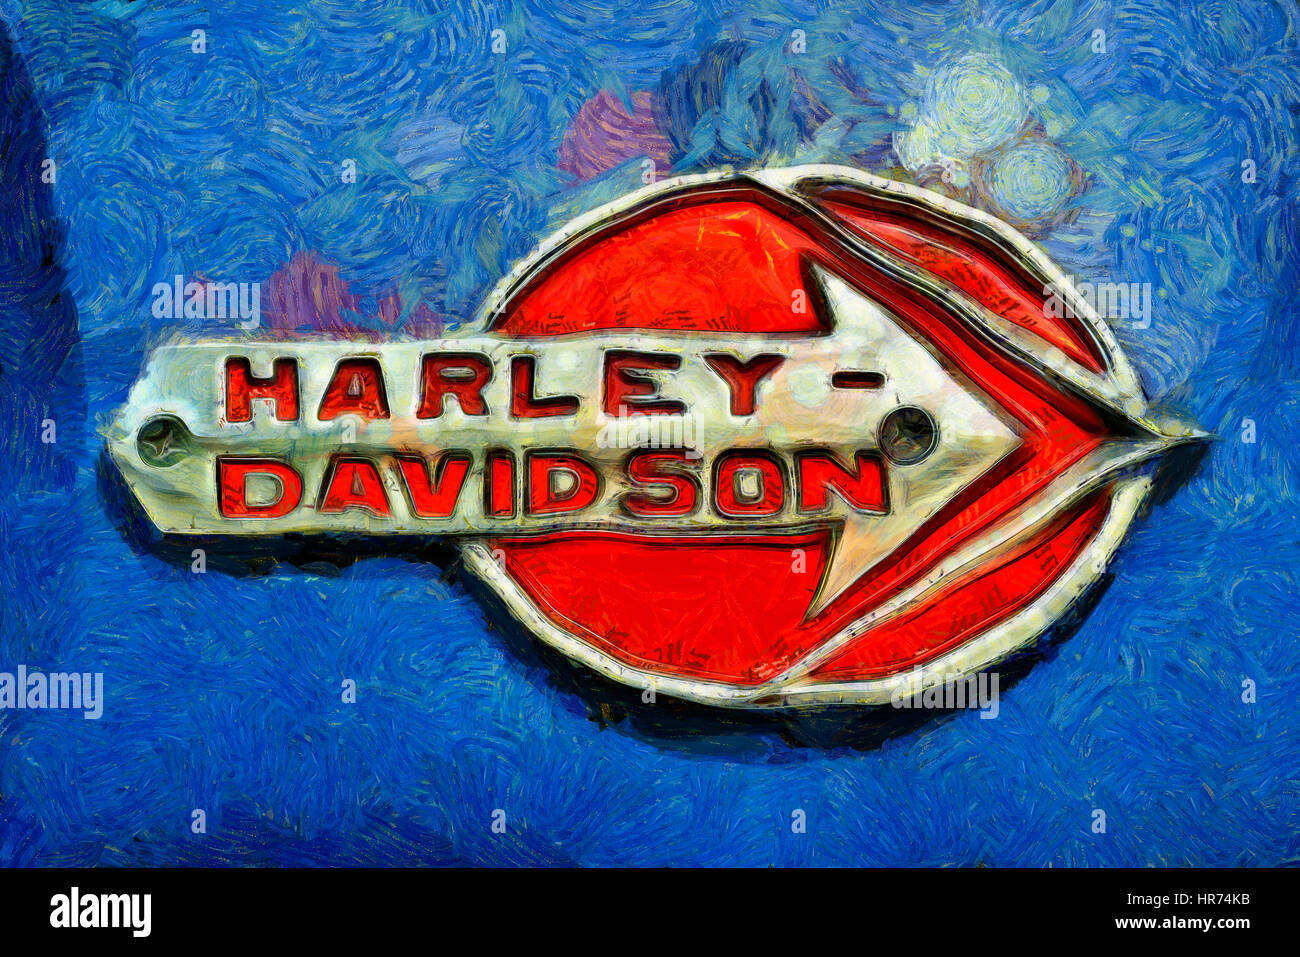 11694 HARLEY DAVIDSON PIN BADGE ORANGE & BLACK SMALL LOGO MOTORCYCLE MOTOR BIKE 